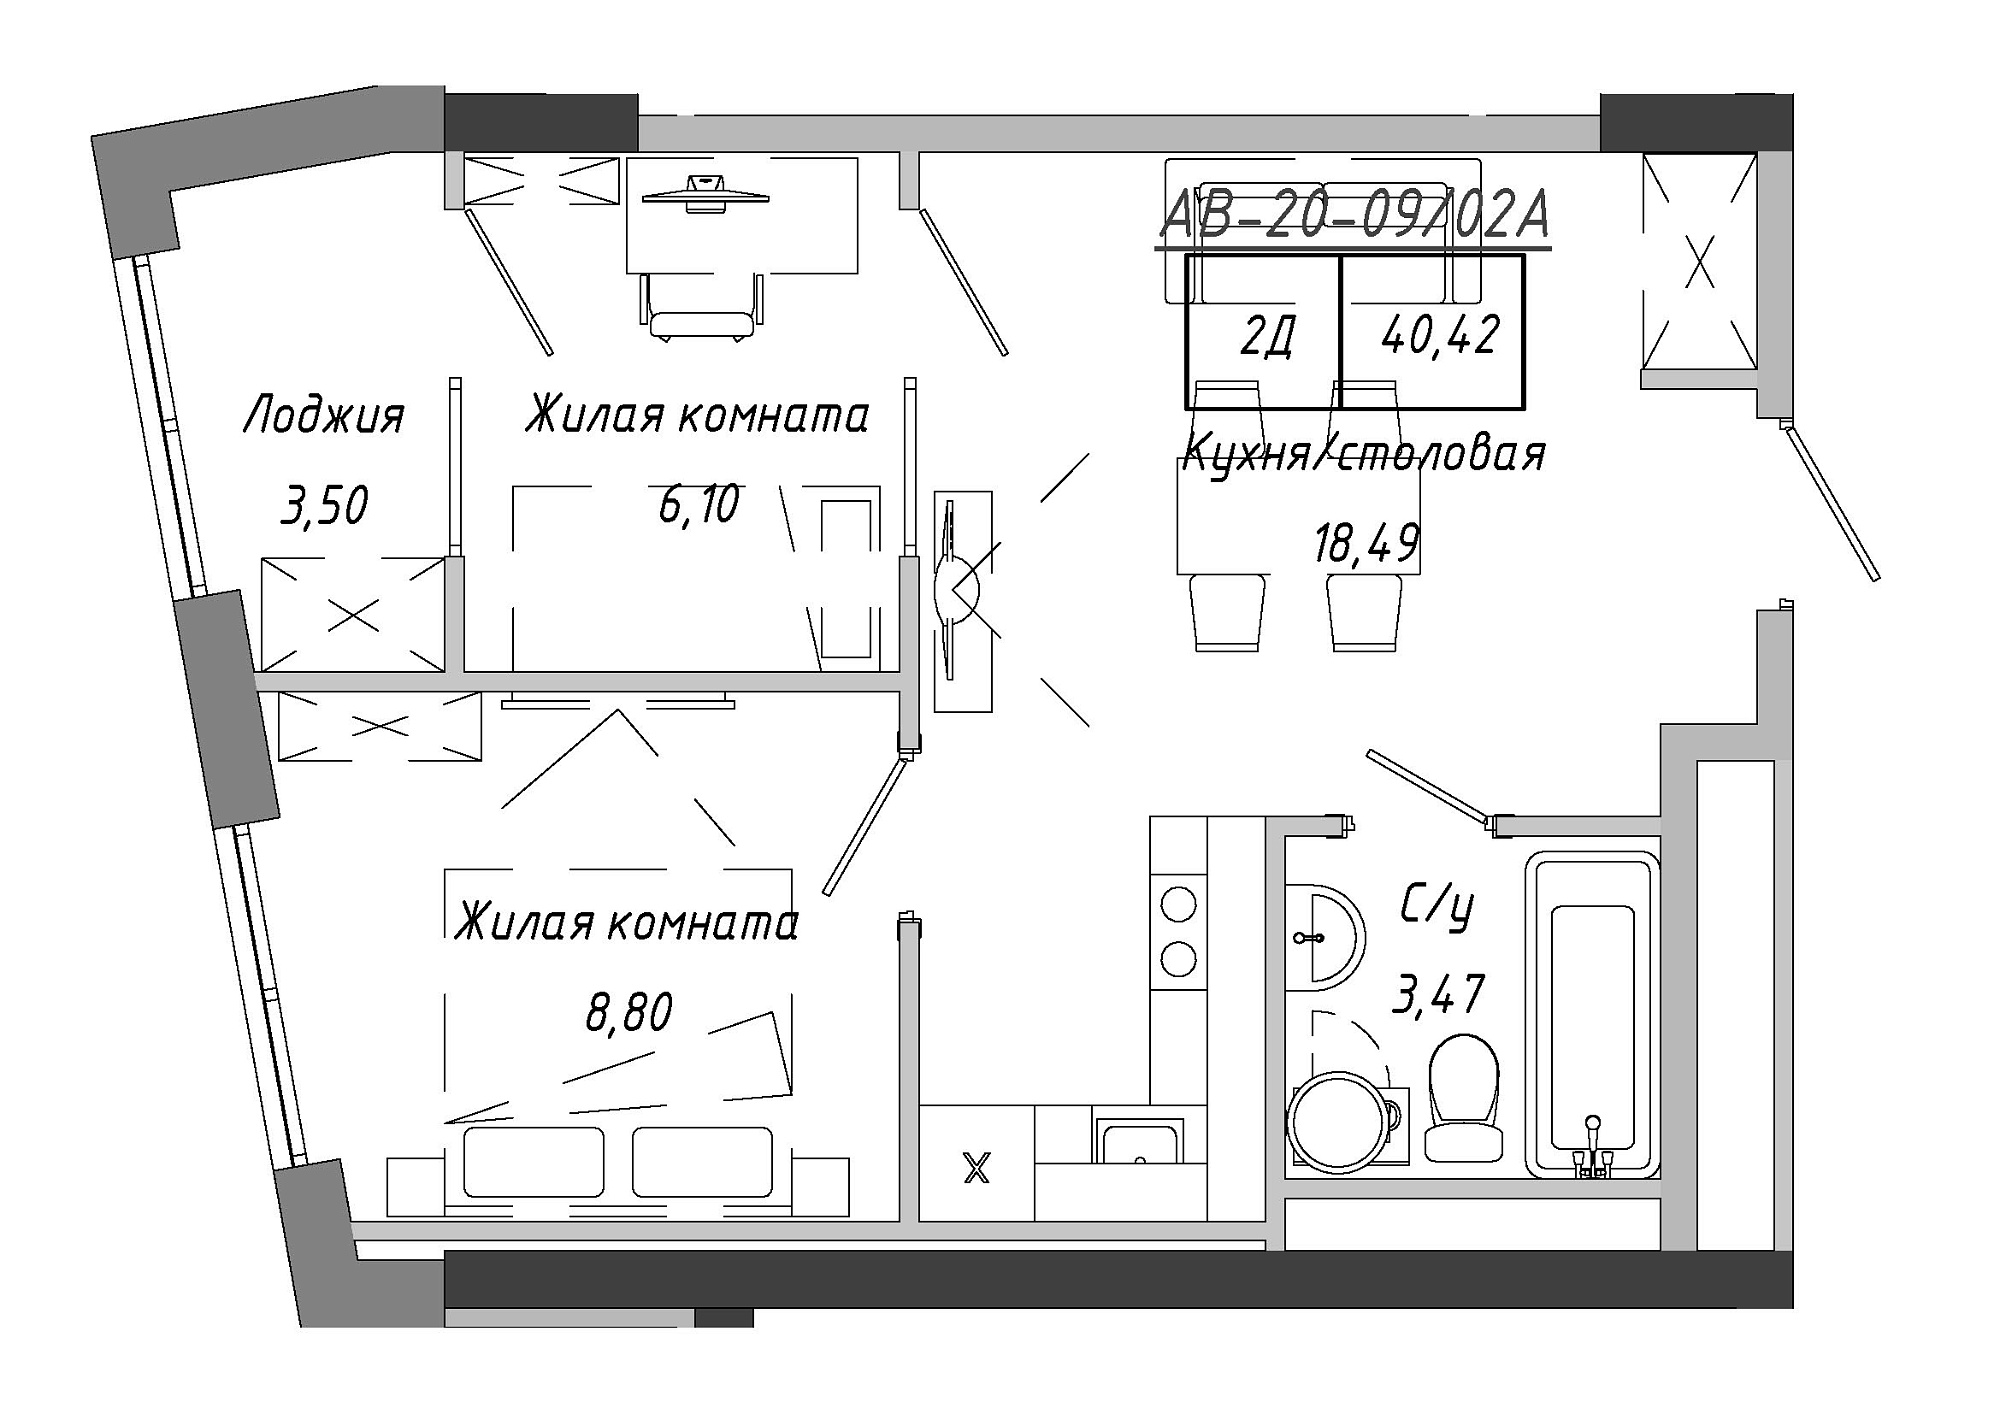 Планування 2-к квартира площею 41.9м2, AB-20-09/0002а.